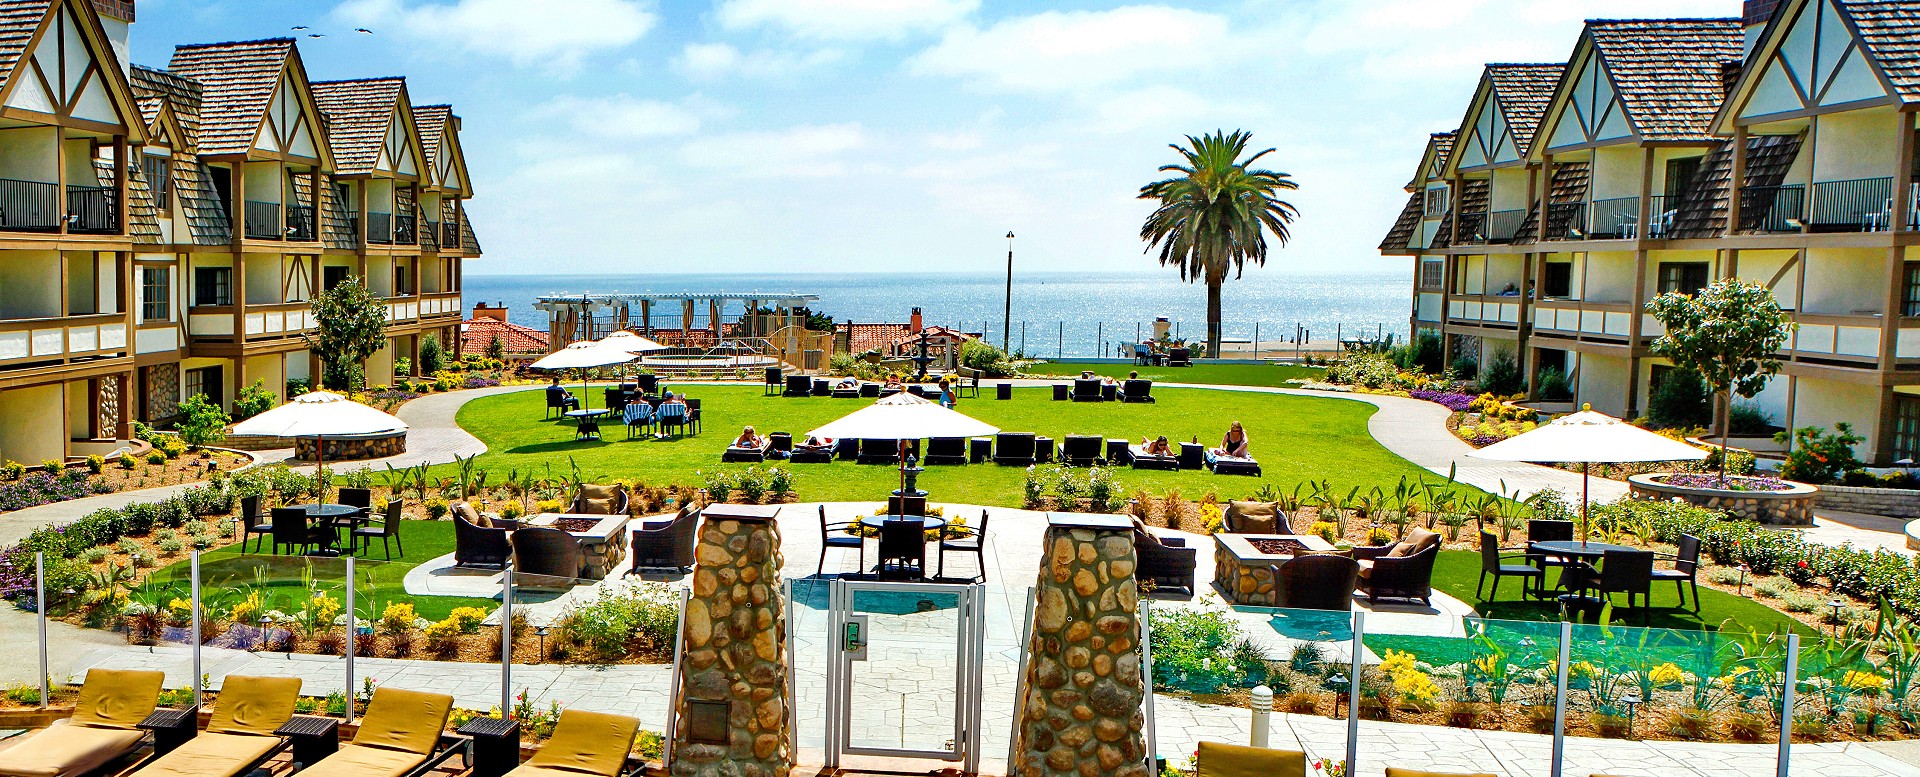 Carlsbad California Hotel Carlsbad Inn Beach Resort Official Website